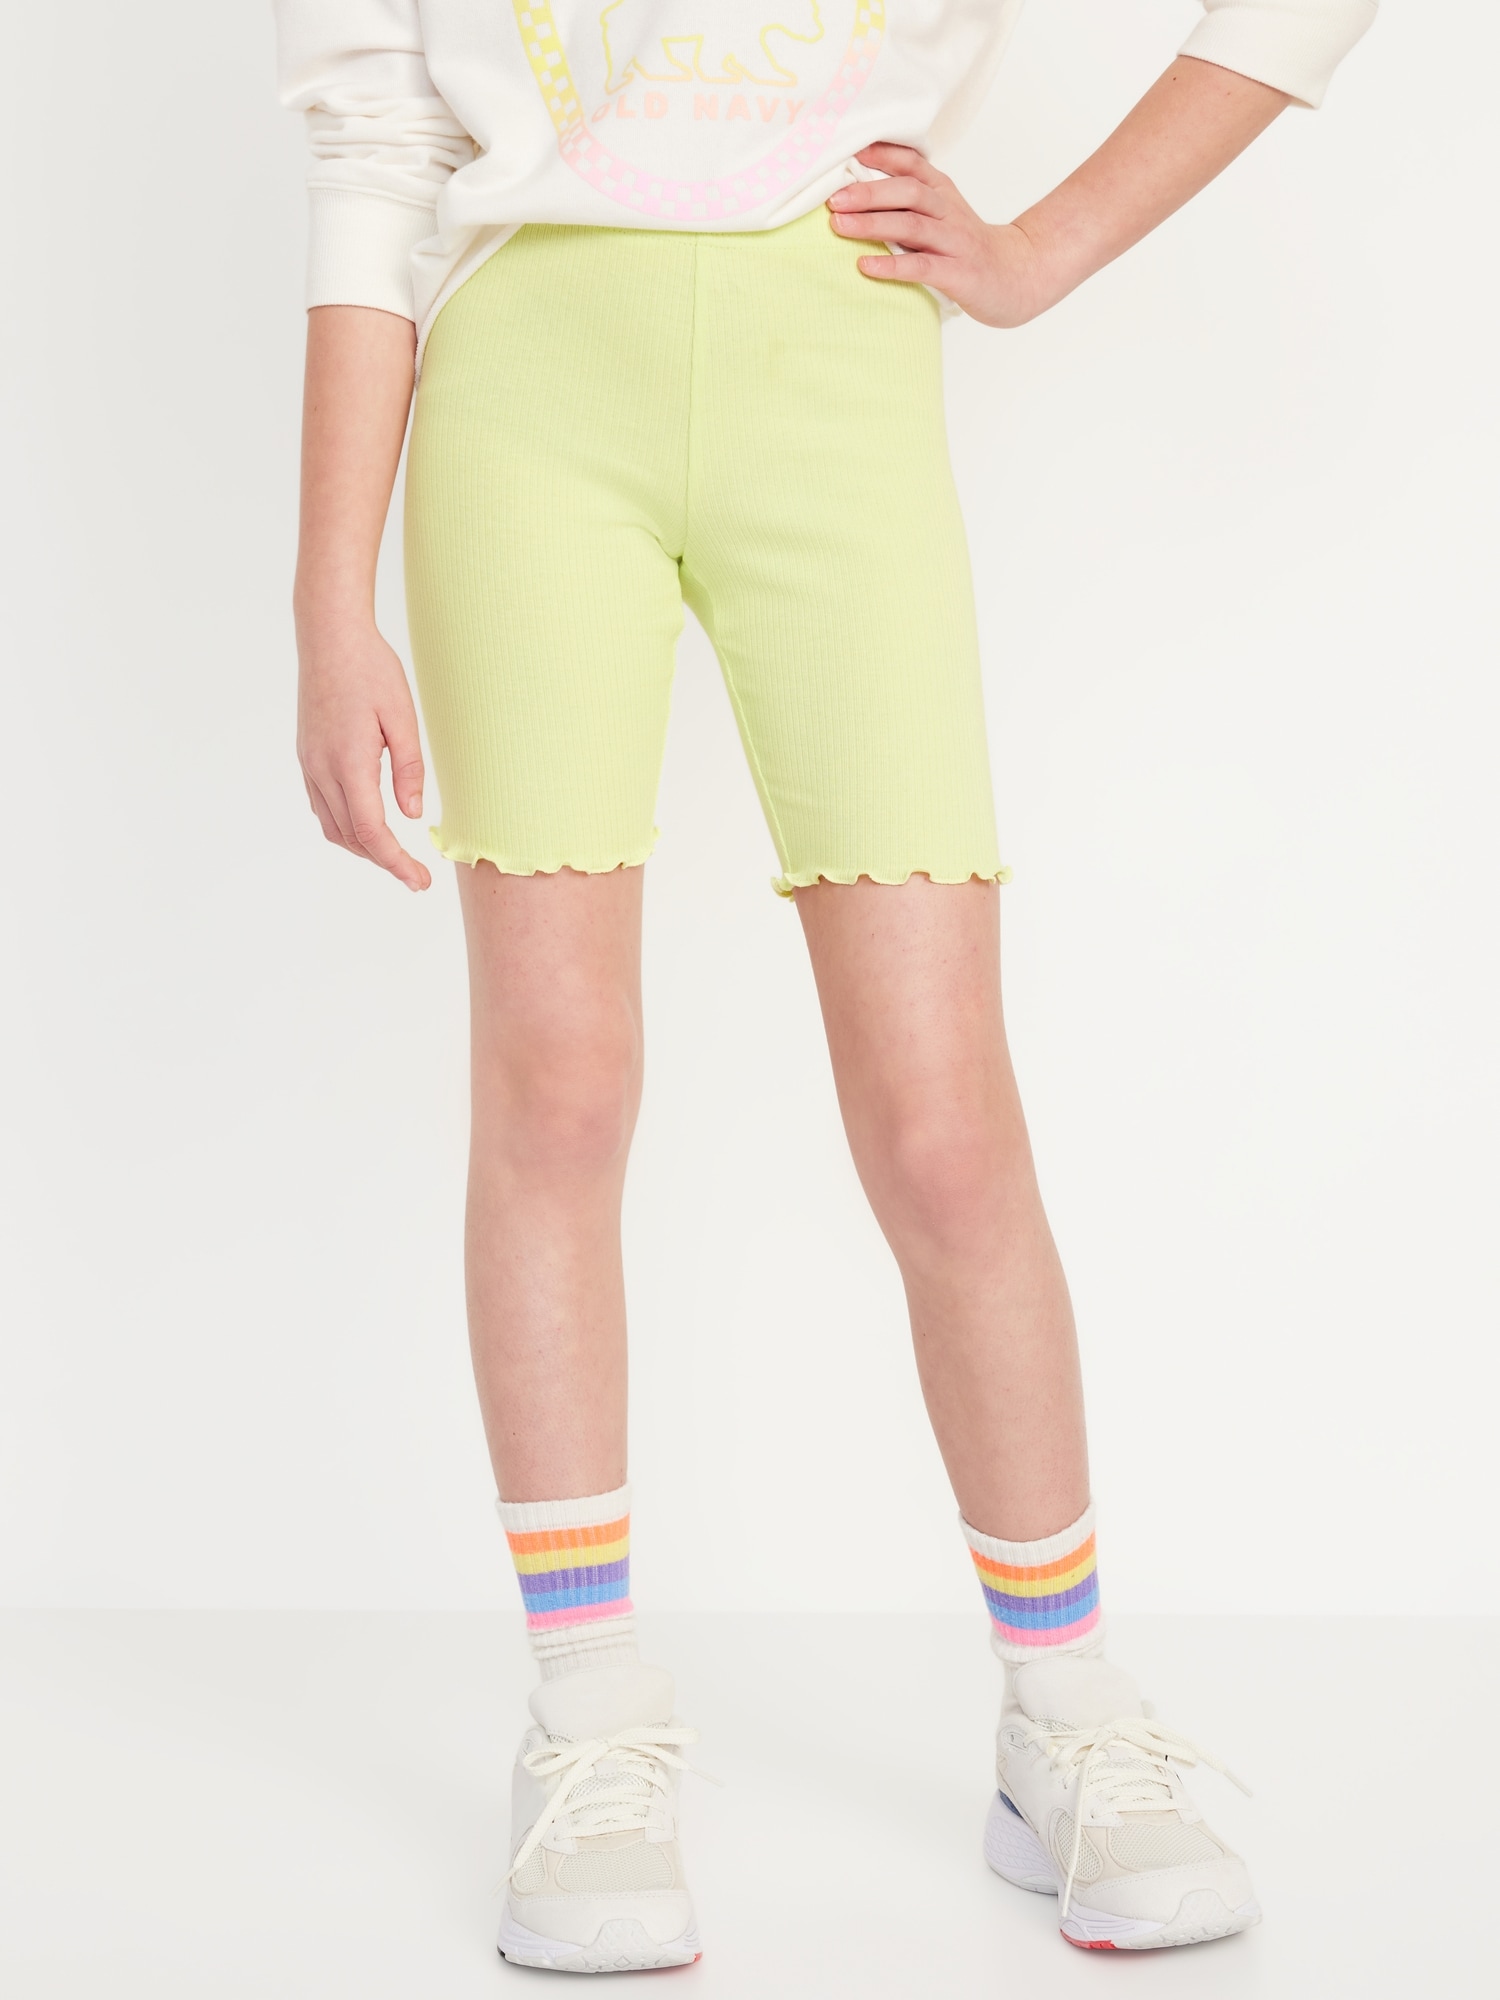 Lettuce-Edge Biker Shorts for Girls